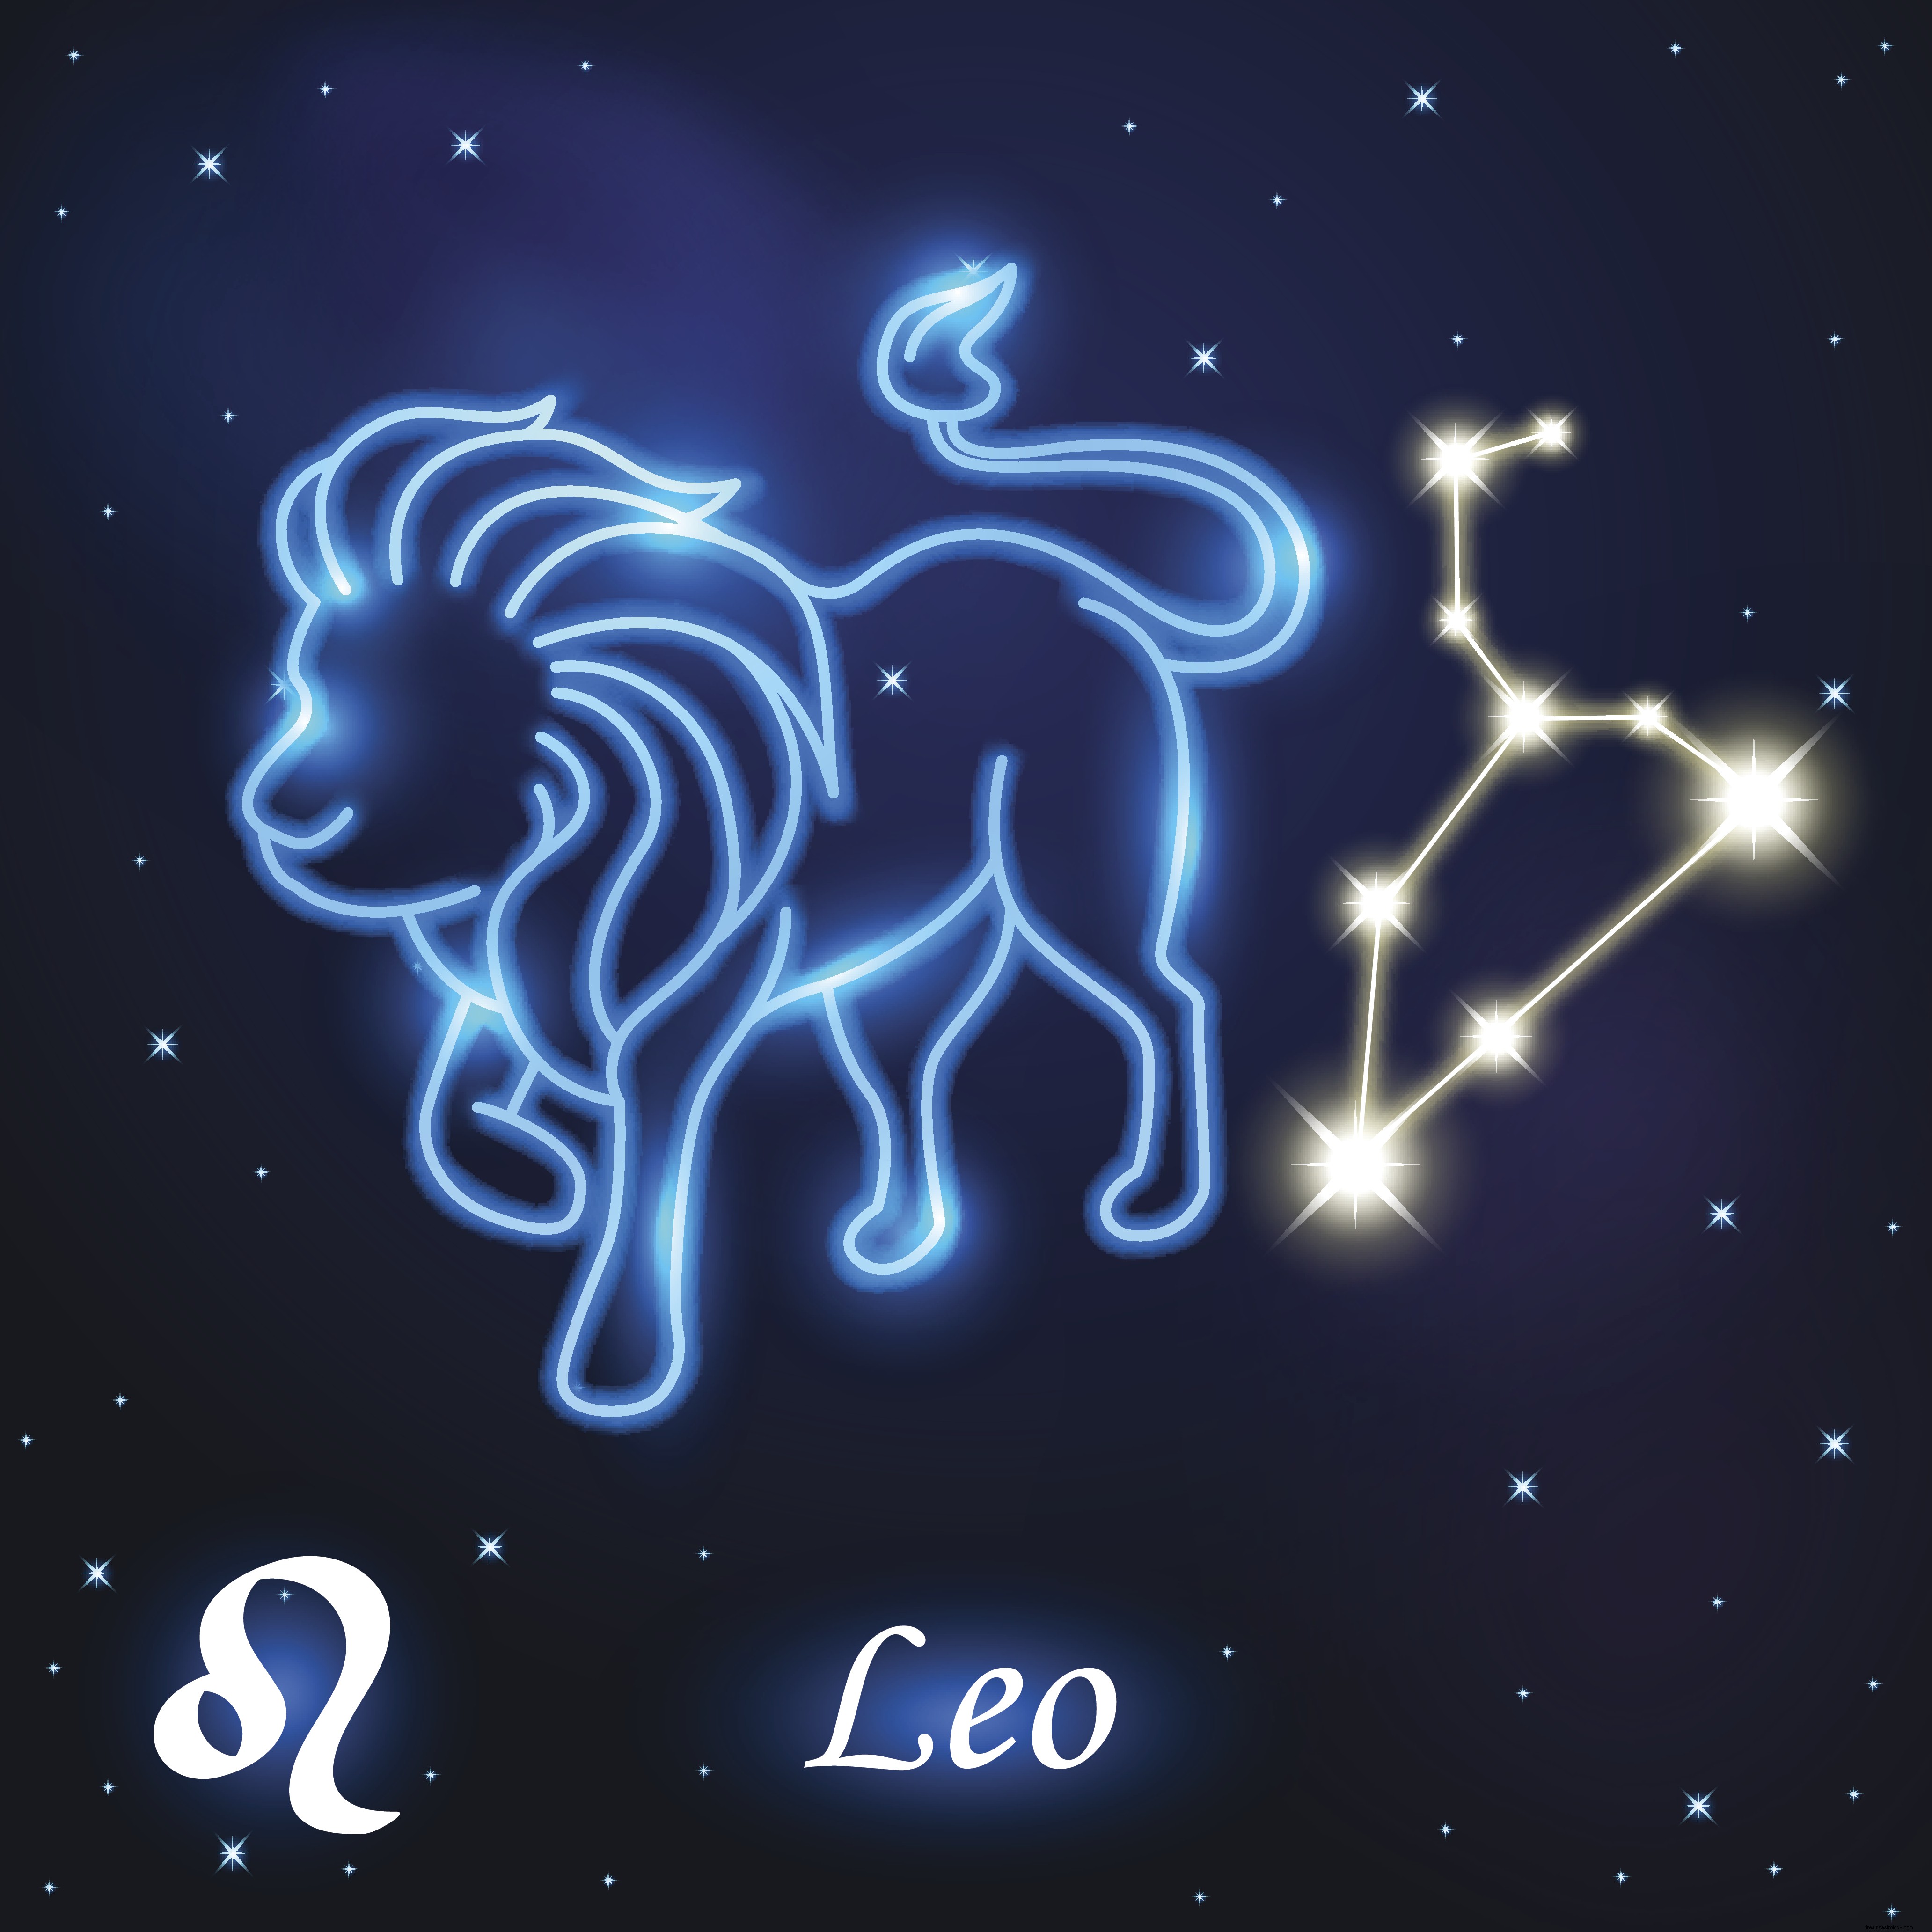 Εβδομαδιαίο Ωροσκόπιο 16 Δεκεμβρίου έως 22 Δεκεμβρίου:Καρκίνος, Λέων είναι η αστρολογική σας πρόβλεψη για την εβδομάδα που ακολουθεί 